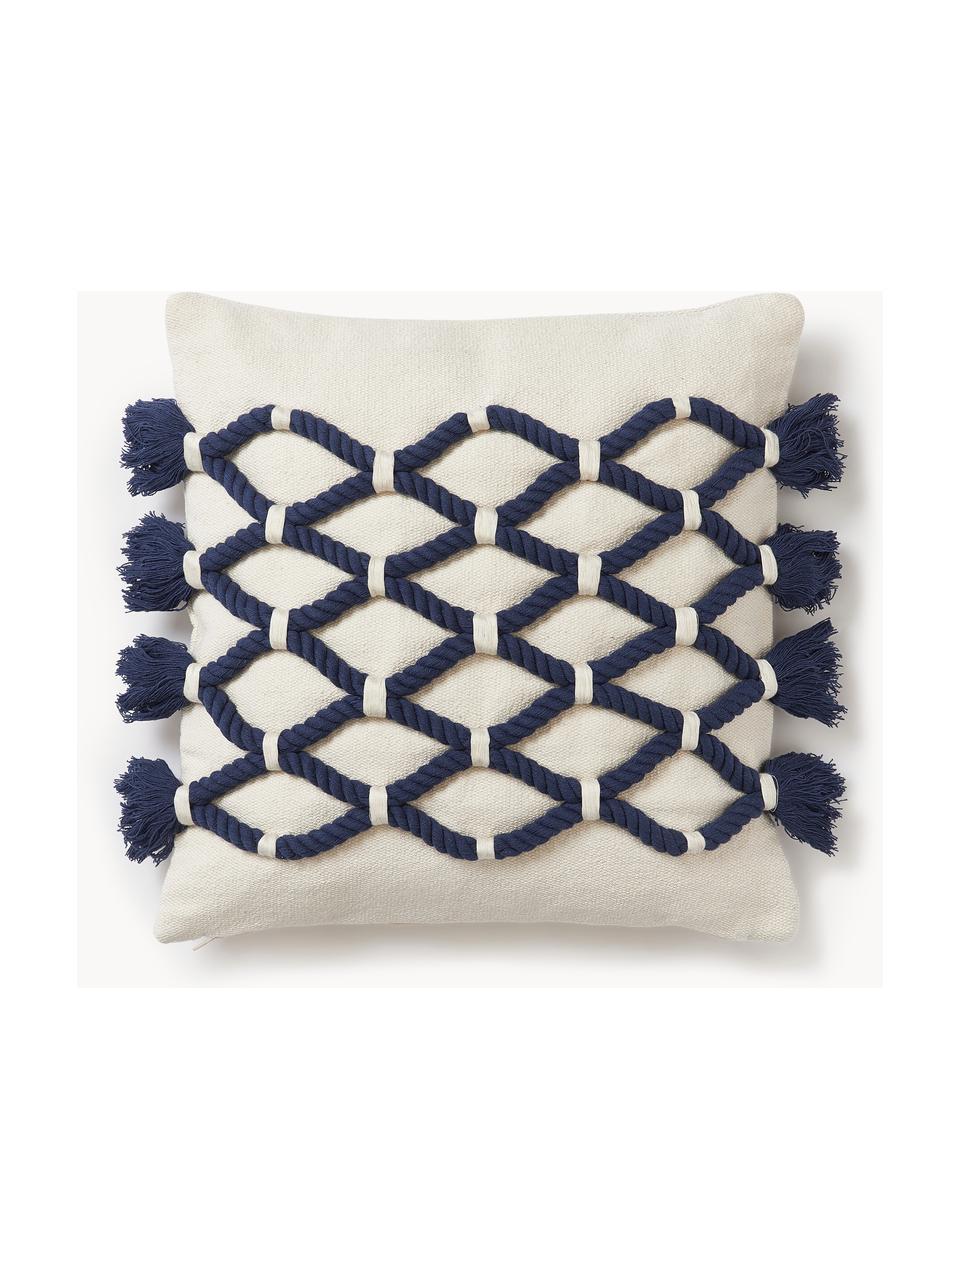 Poszewka na poduszkę Galliot, 100% bawełna, Ciemny niebieski, kremowobiały, S 40 x D 40 cm